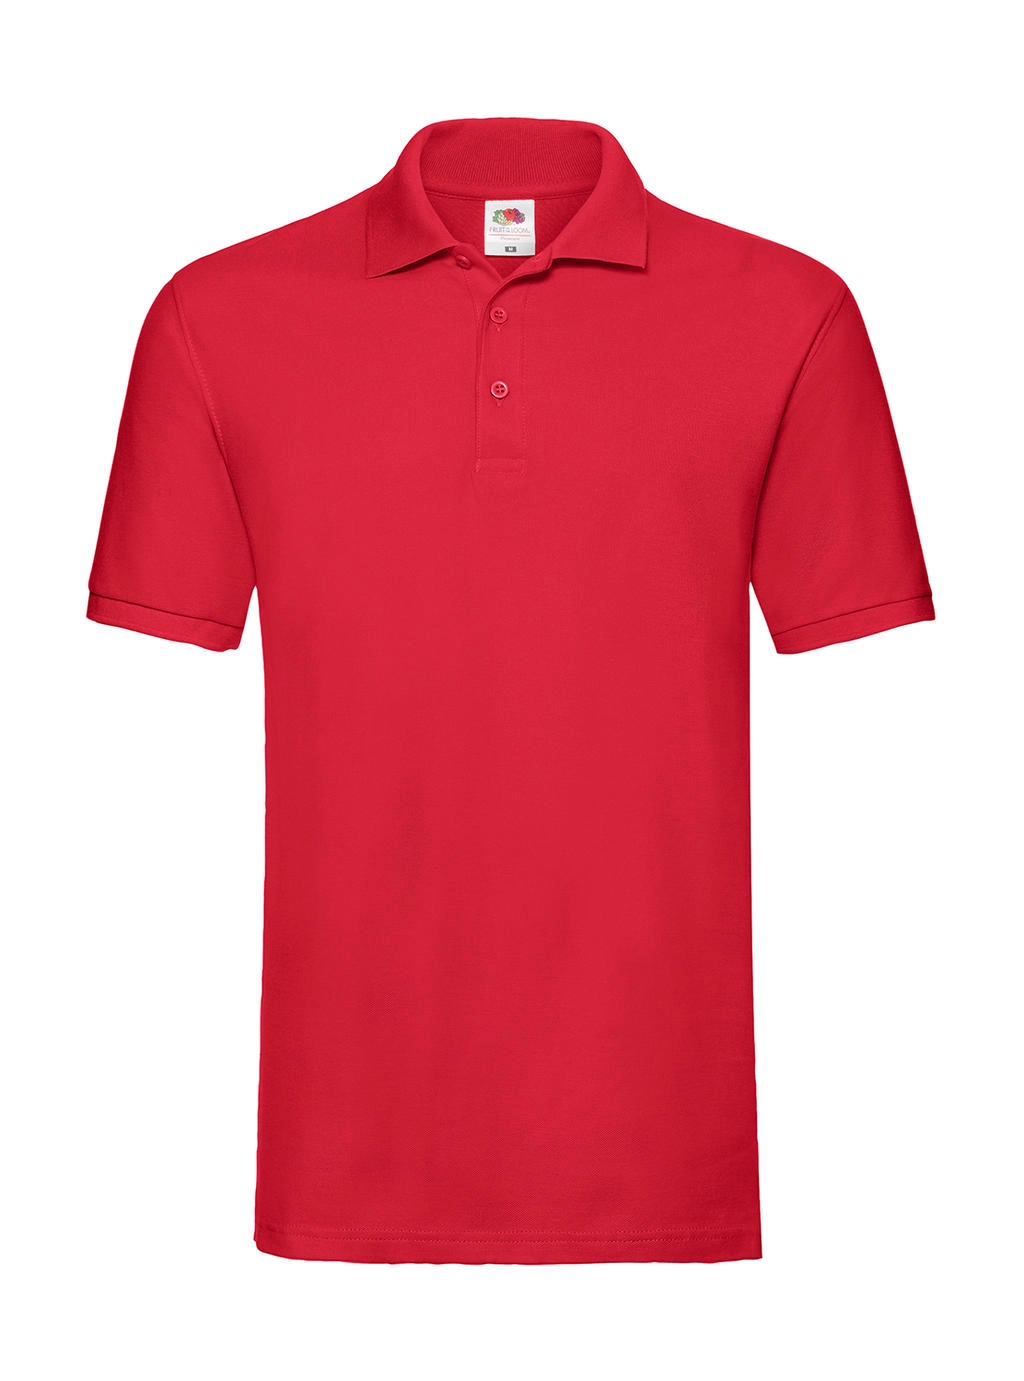 Premium Polo zum Besticken und Bedrucken in der Farbe Red mit Ihren Logo, Schriftzug oder Motiv.